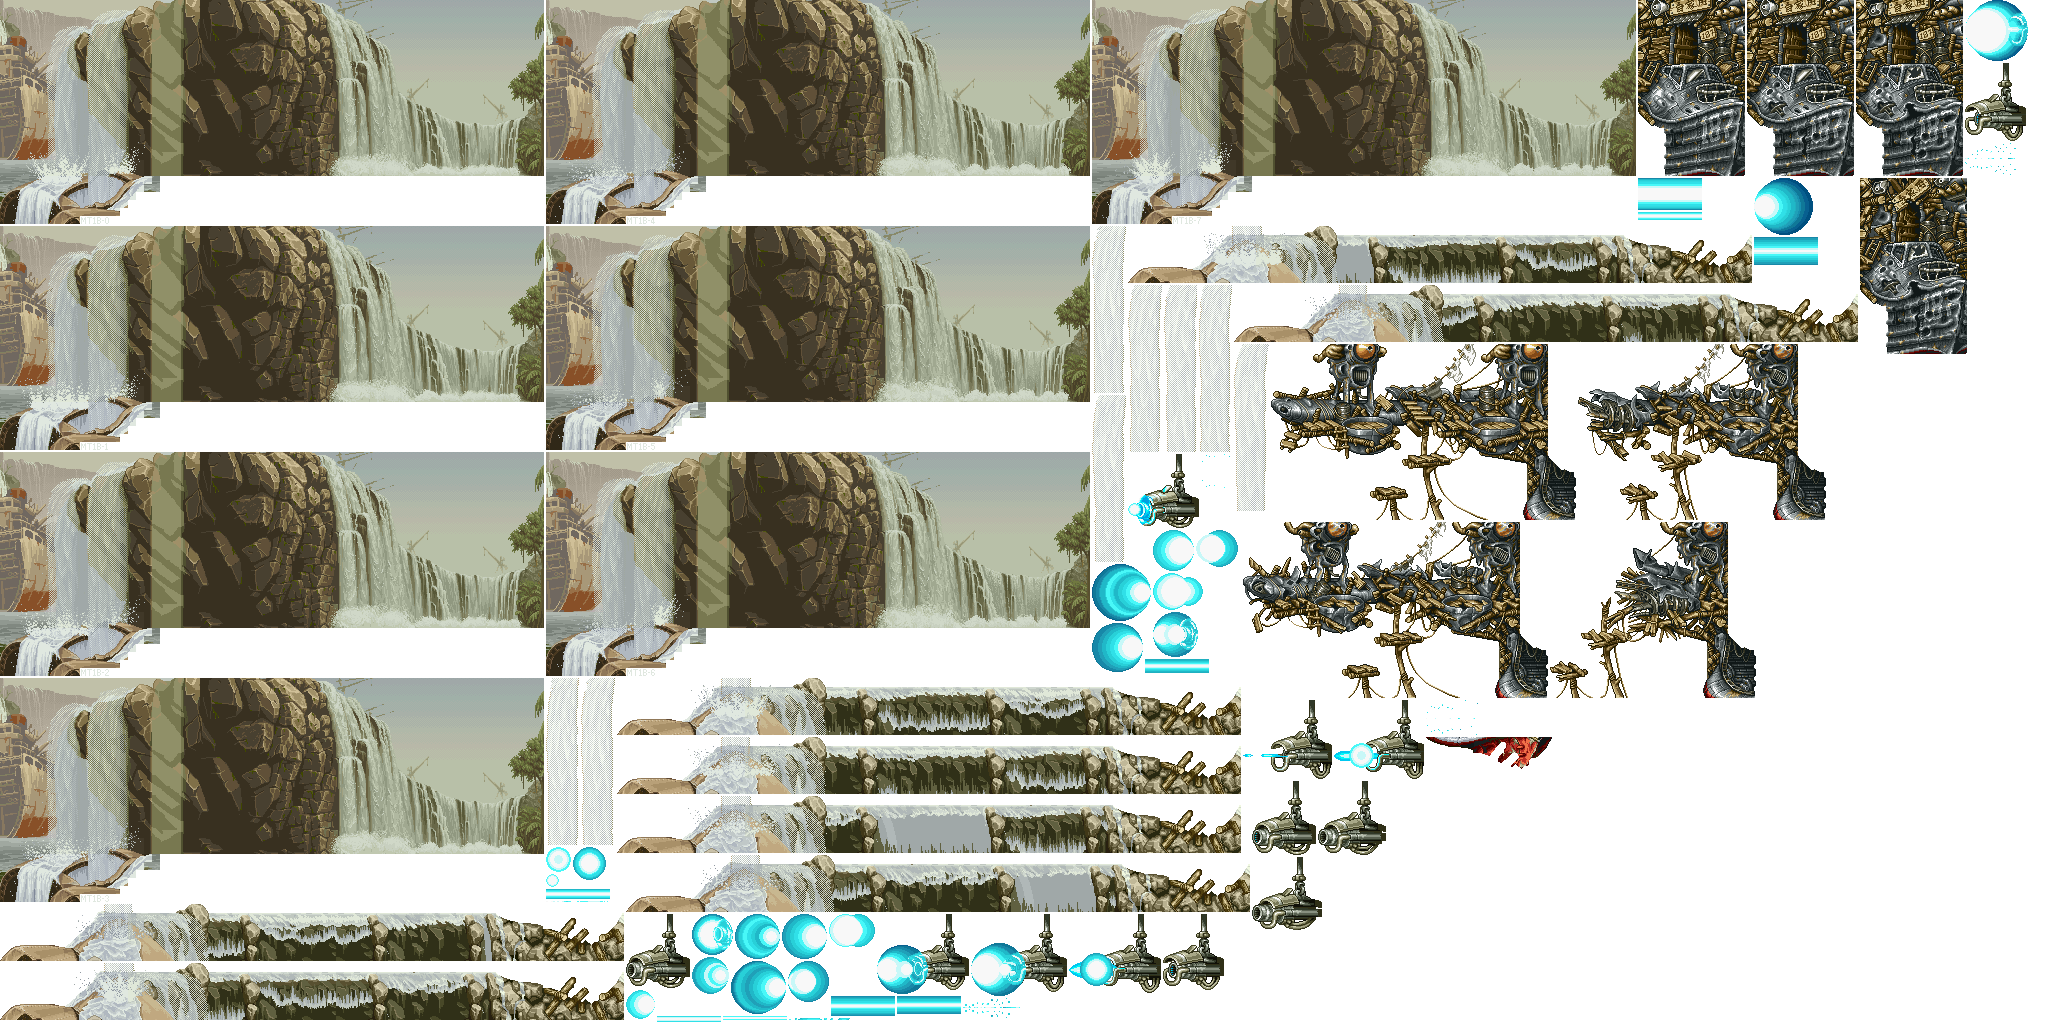 Metal Slug Attack - Stage 01 (Boss)